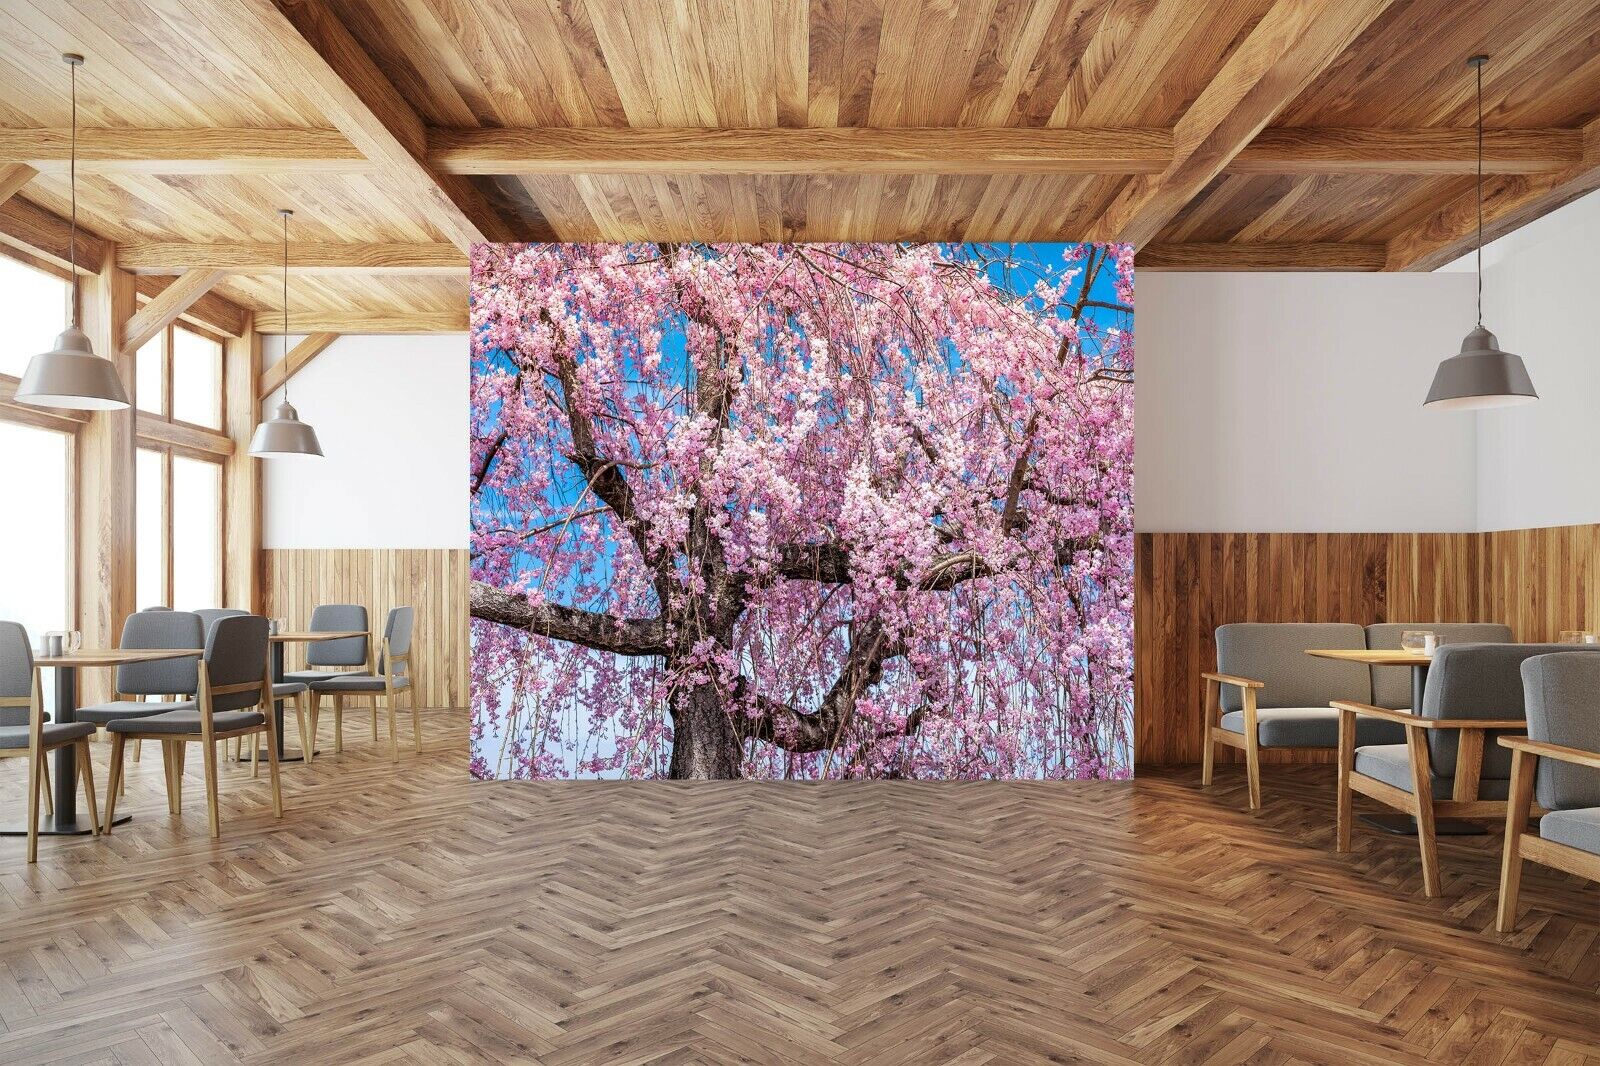 3D Cherry Blossom M520 Tapeta Mural Samoprzylepny Marco Carmassi Amy-pokaż oryginalną nazwę 1. miejsce ogólnie